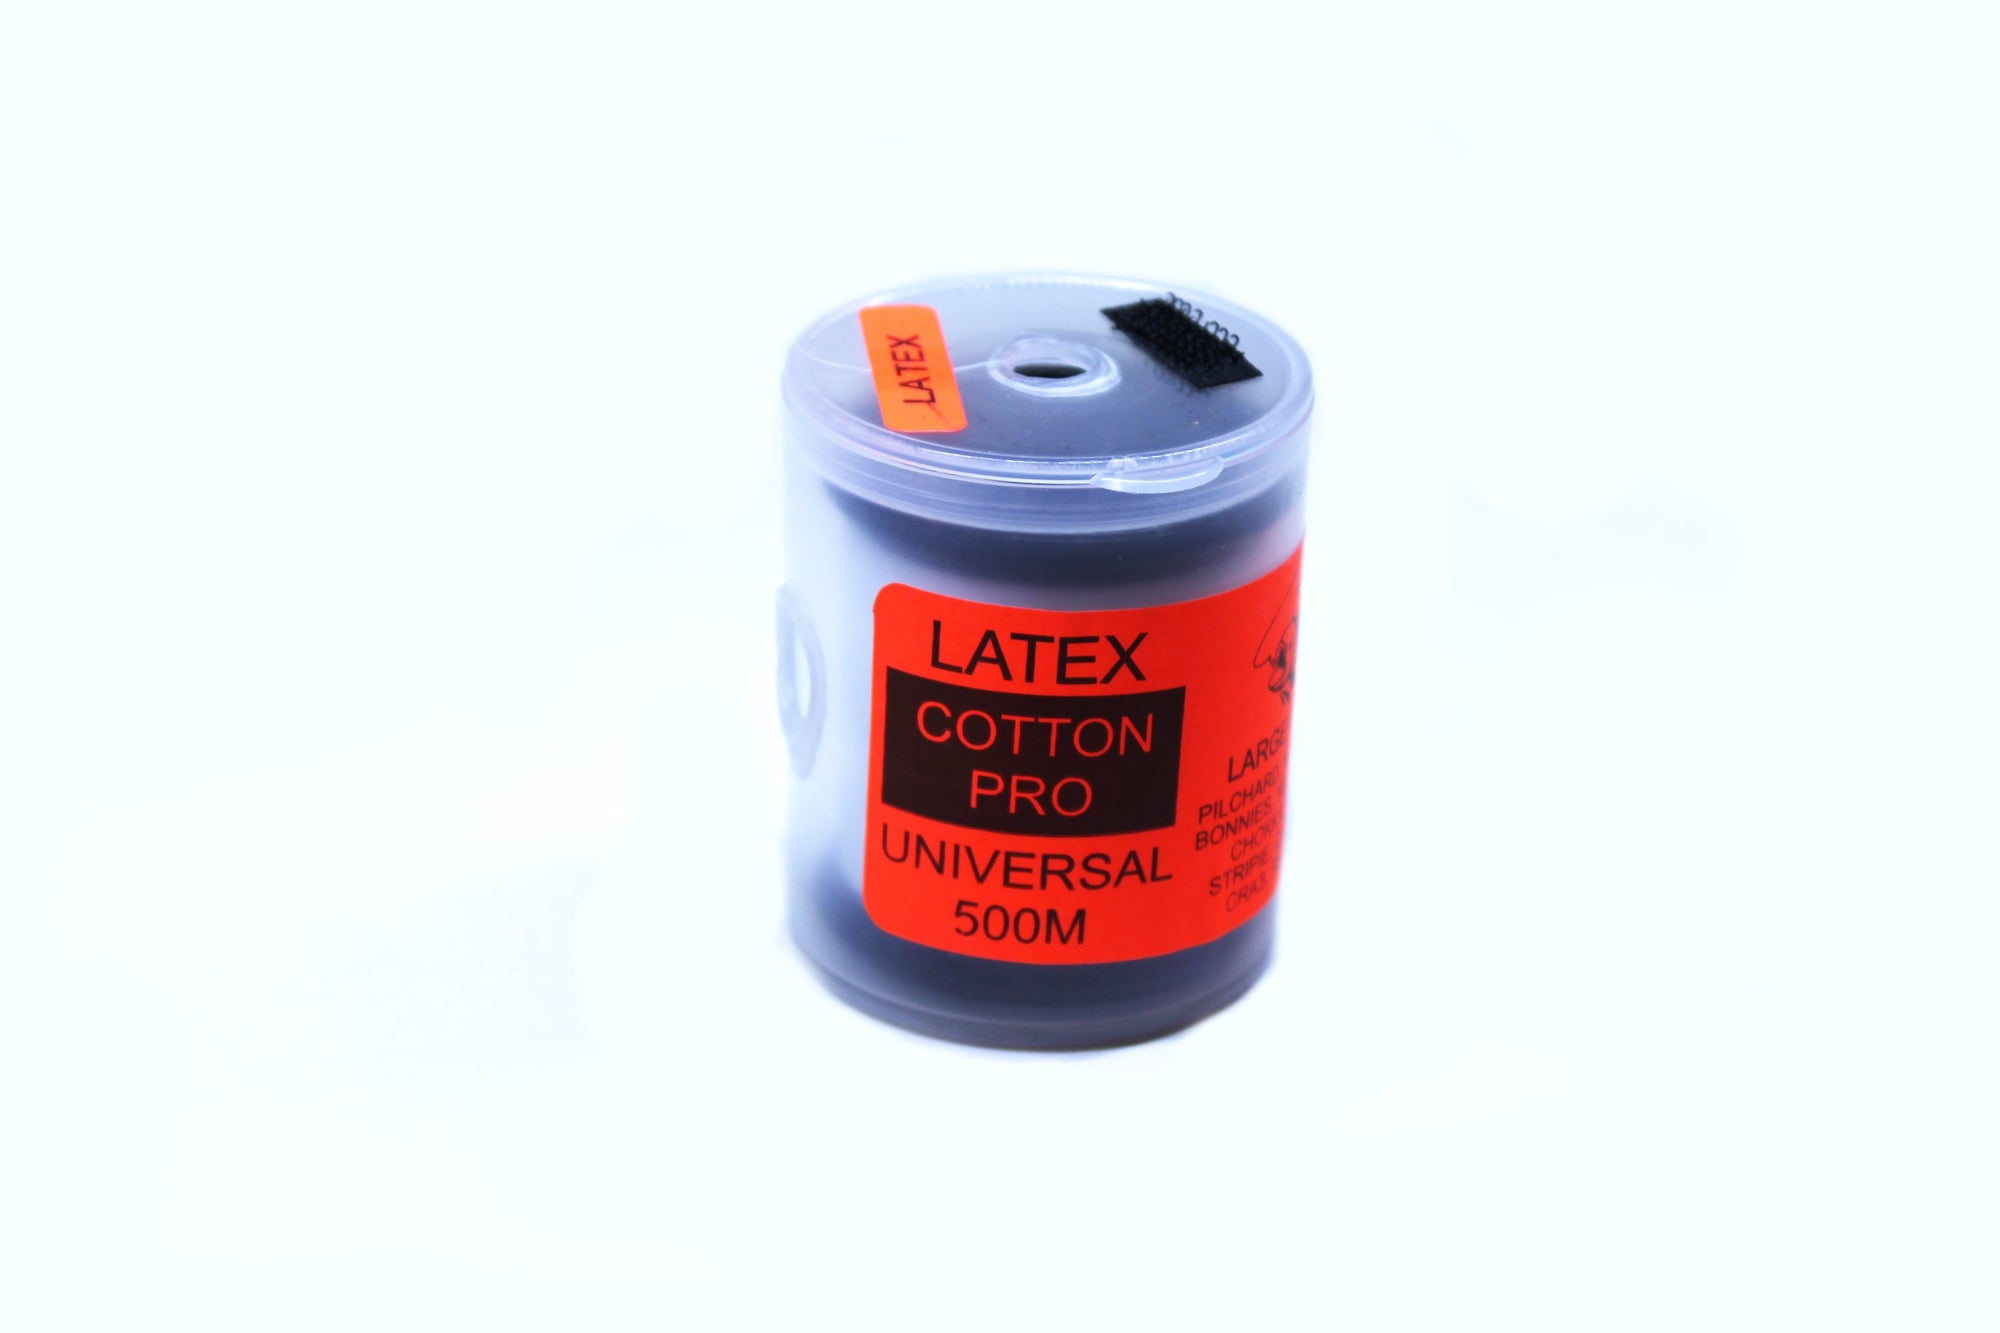 Cotton Pro Latex Universal 